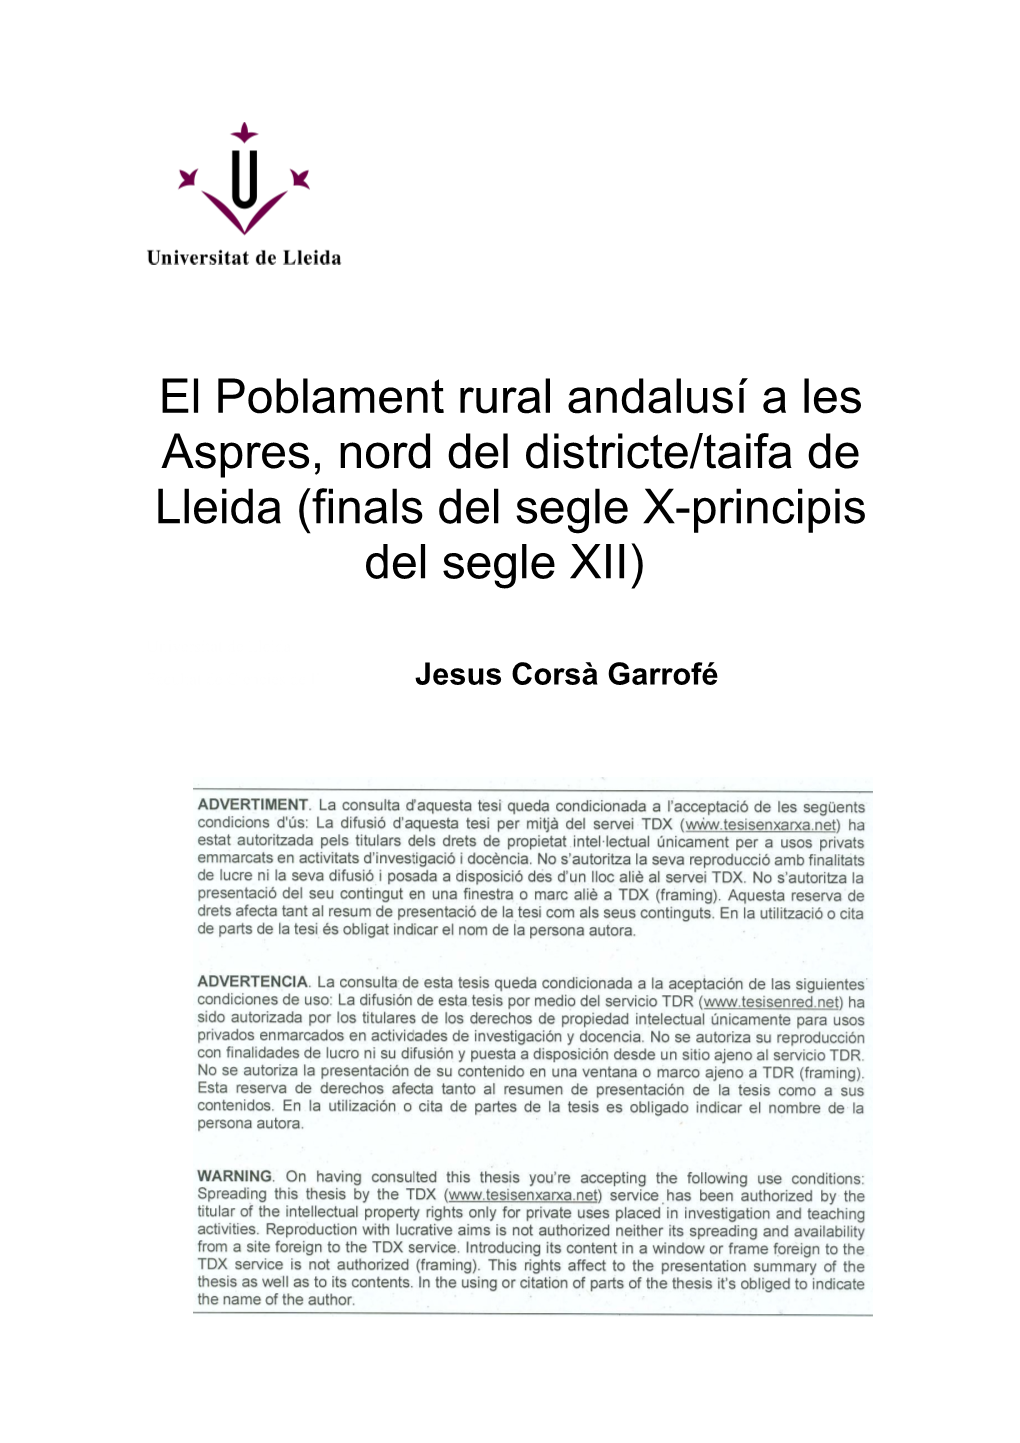 El Poblament Rural Andalusí a Les Aspres, Nord Del Districte/Taifa De Lleida (Finals Del Segle X-Principis Del Segle XII)